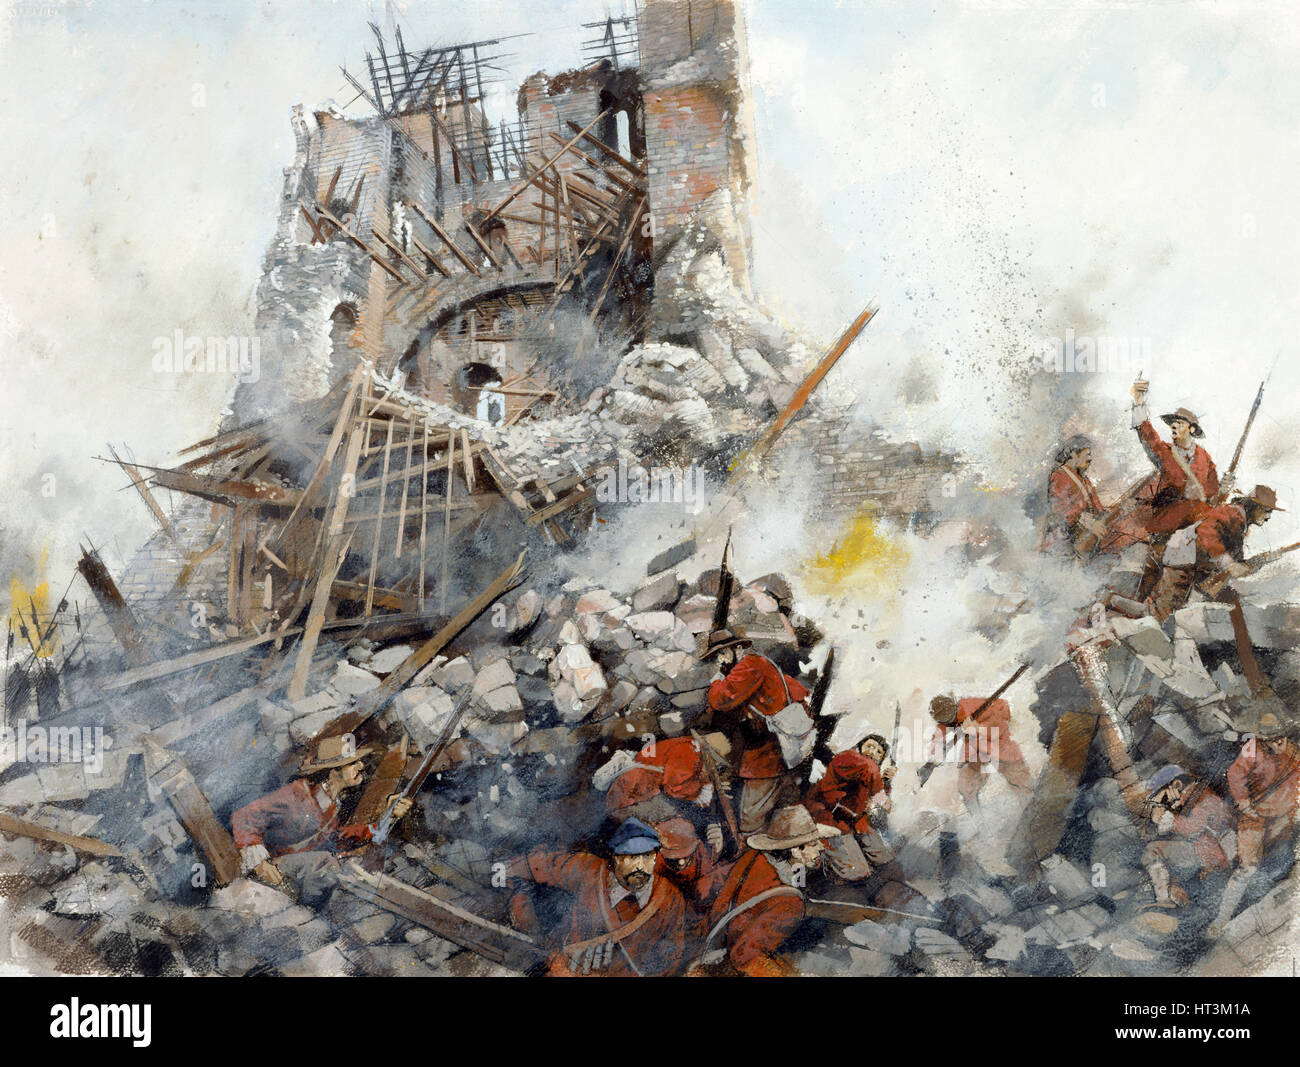 Destruction of the Keep, English Civil War, Scarborough Castle, 1645, (c1990-2010). Artist: Ivan Lapper. Stock Photo